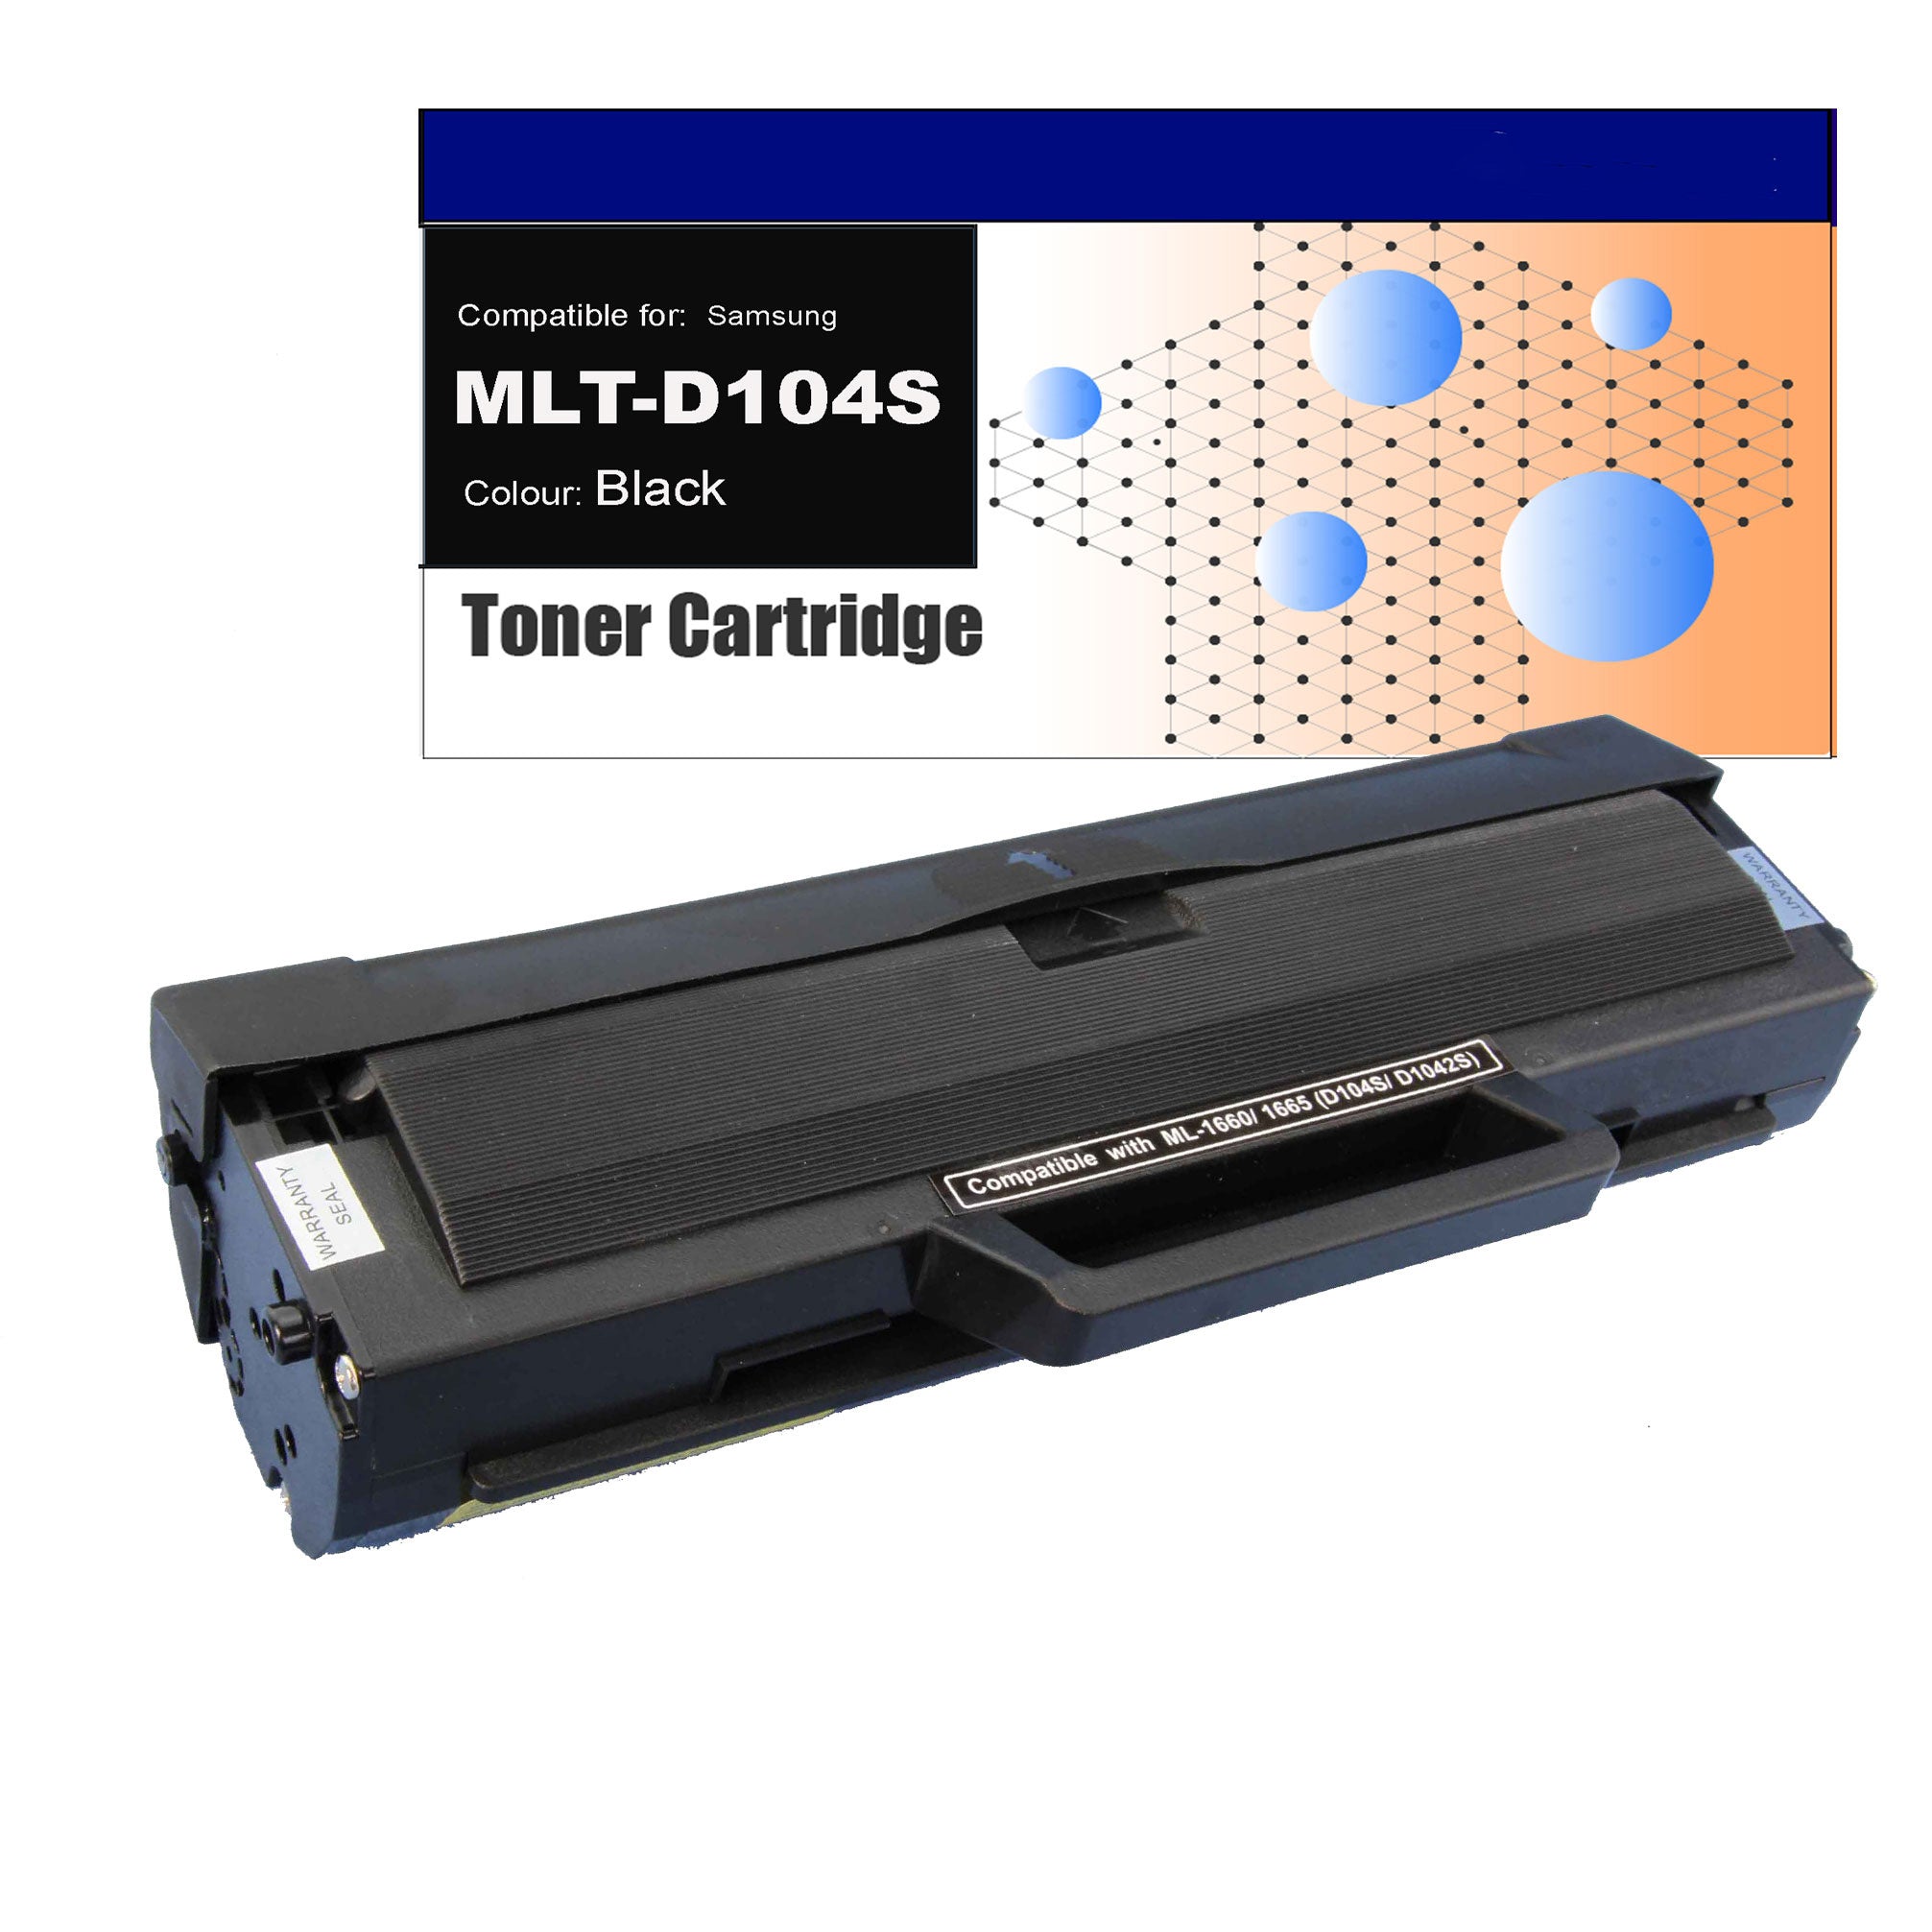 Compatible Toner for Samsung MLT-D104S Black Toner Cartridges